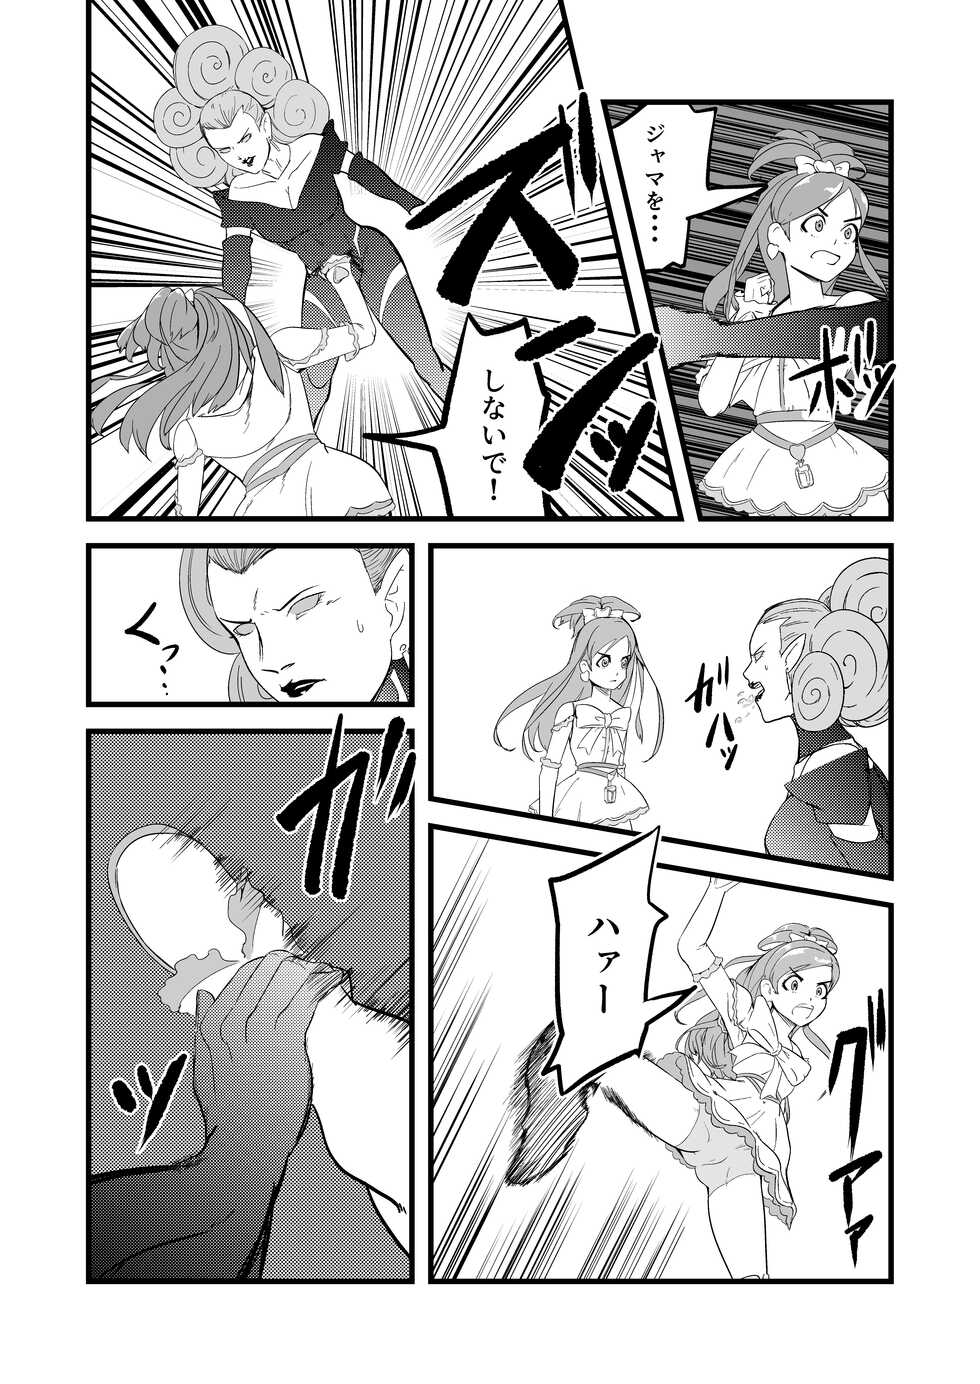 [JabyssK] Belly Crisis 7 (Futari wa Pretty Cure) - Page 6